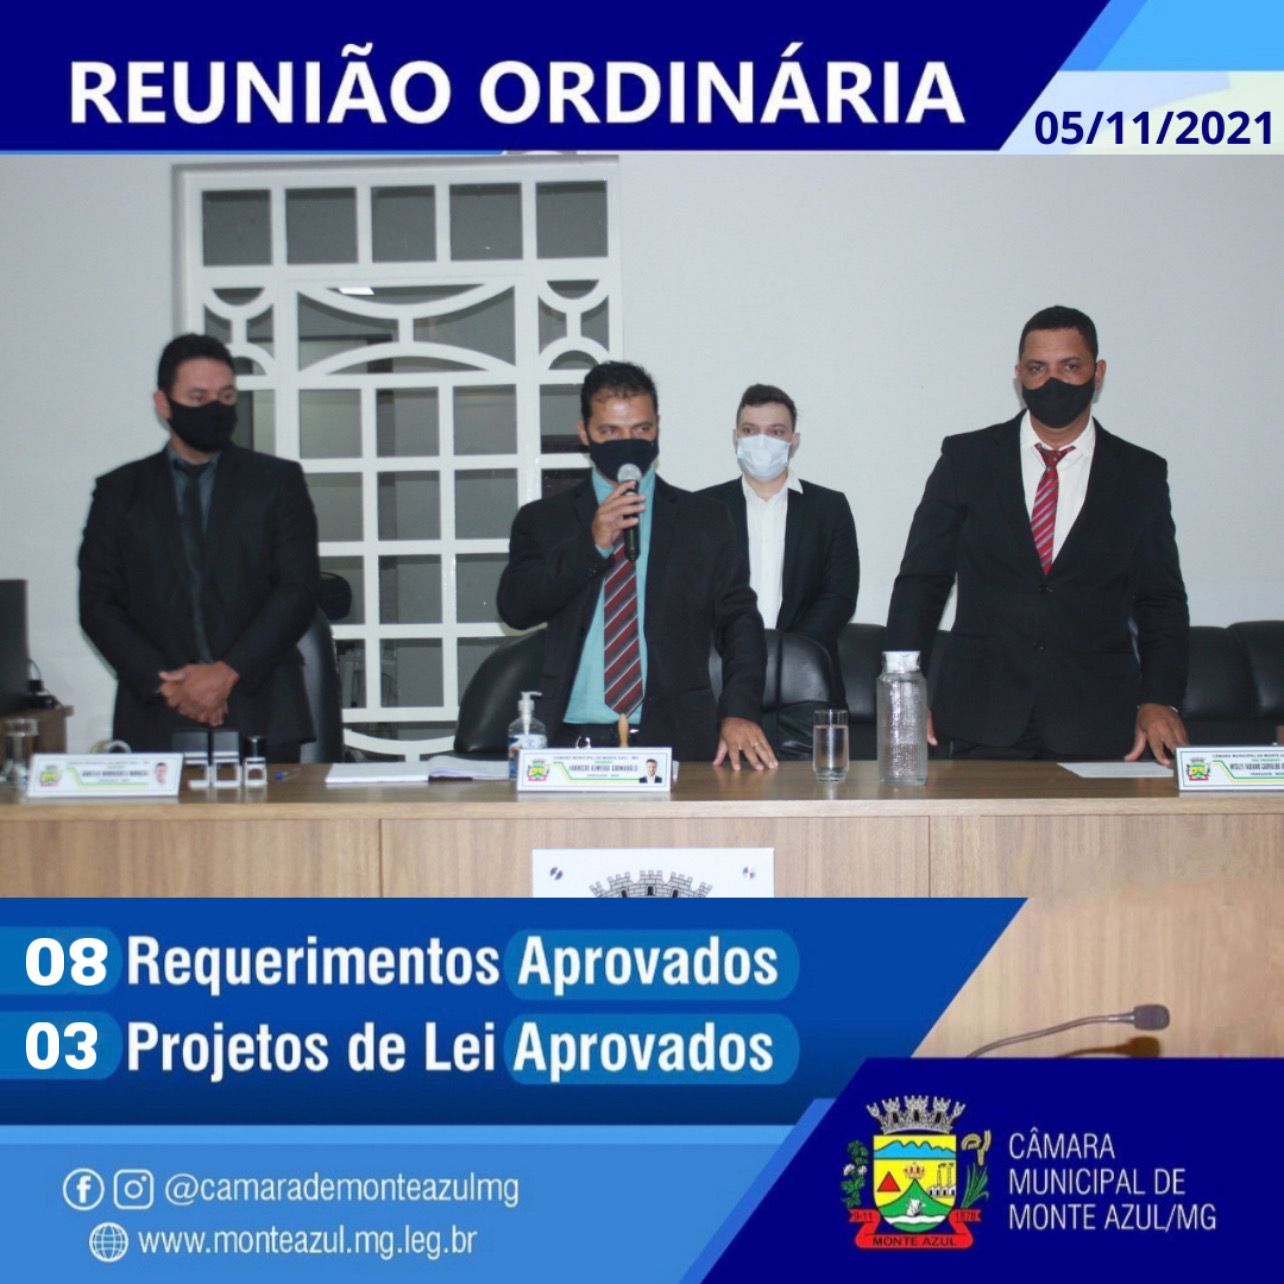 14ª REUNIÃO ORDINÁRIA / MONTE AZUL-MG / 05-11-2021